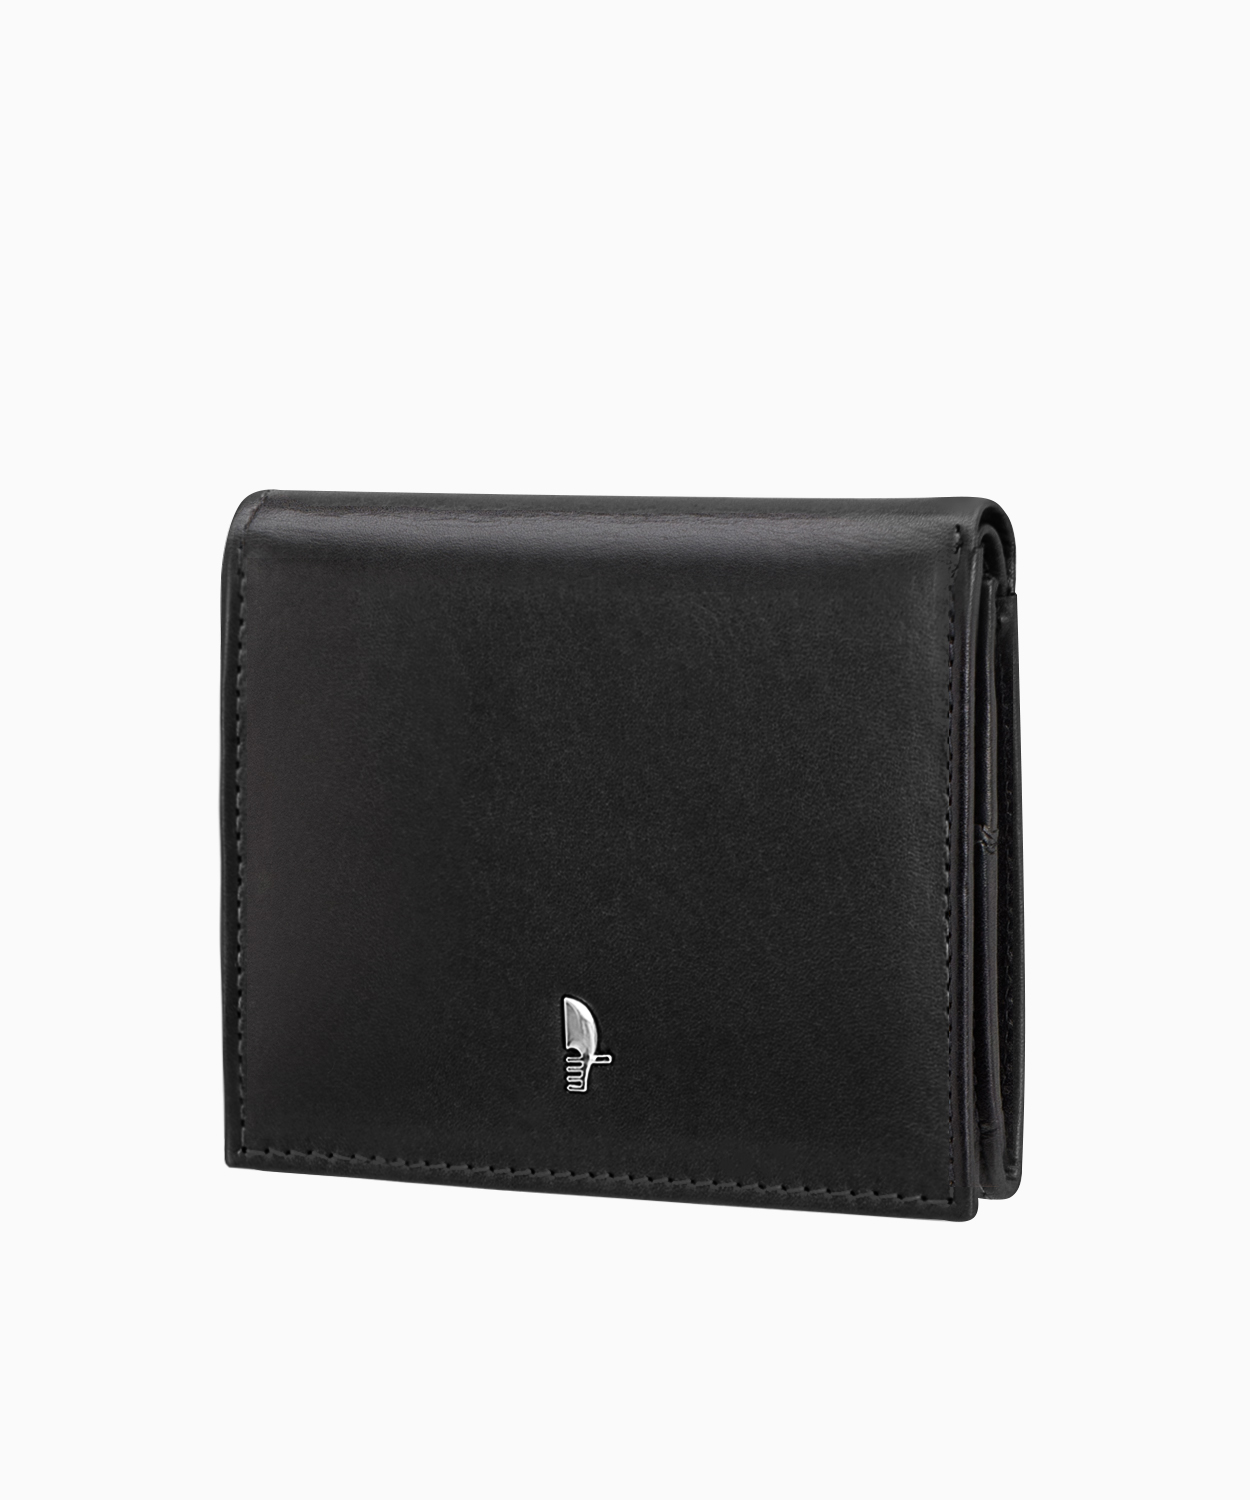 PUCCINI Damski mały skórzany portfel w kolorze czarnym